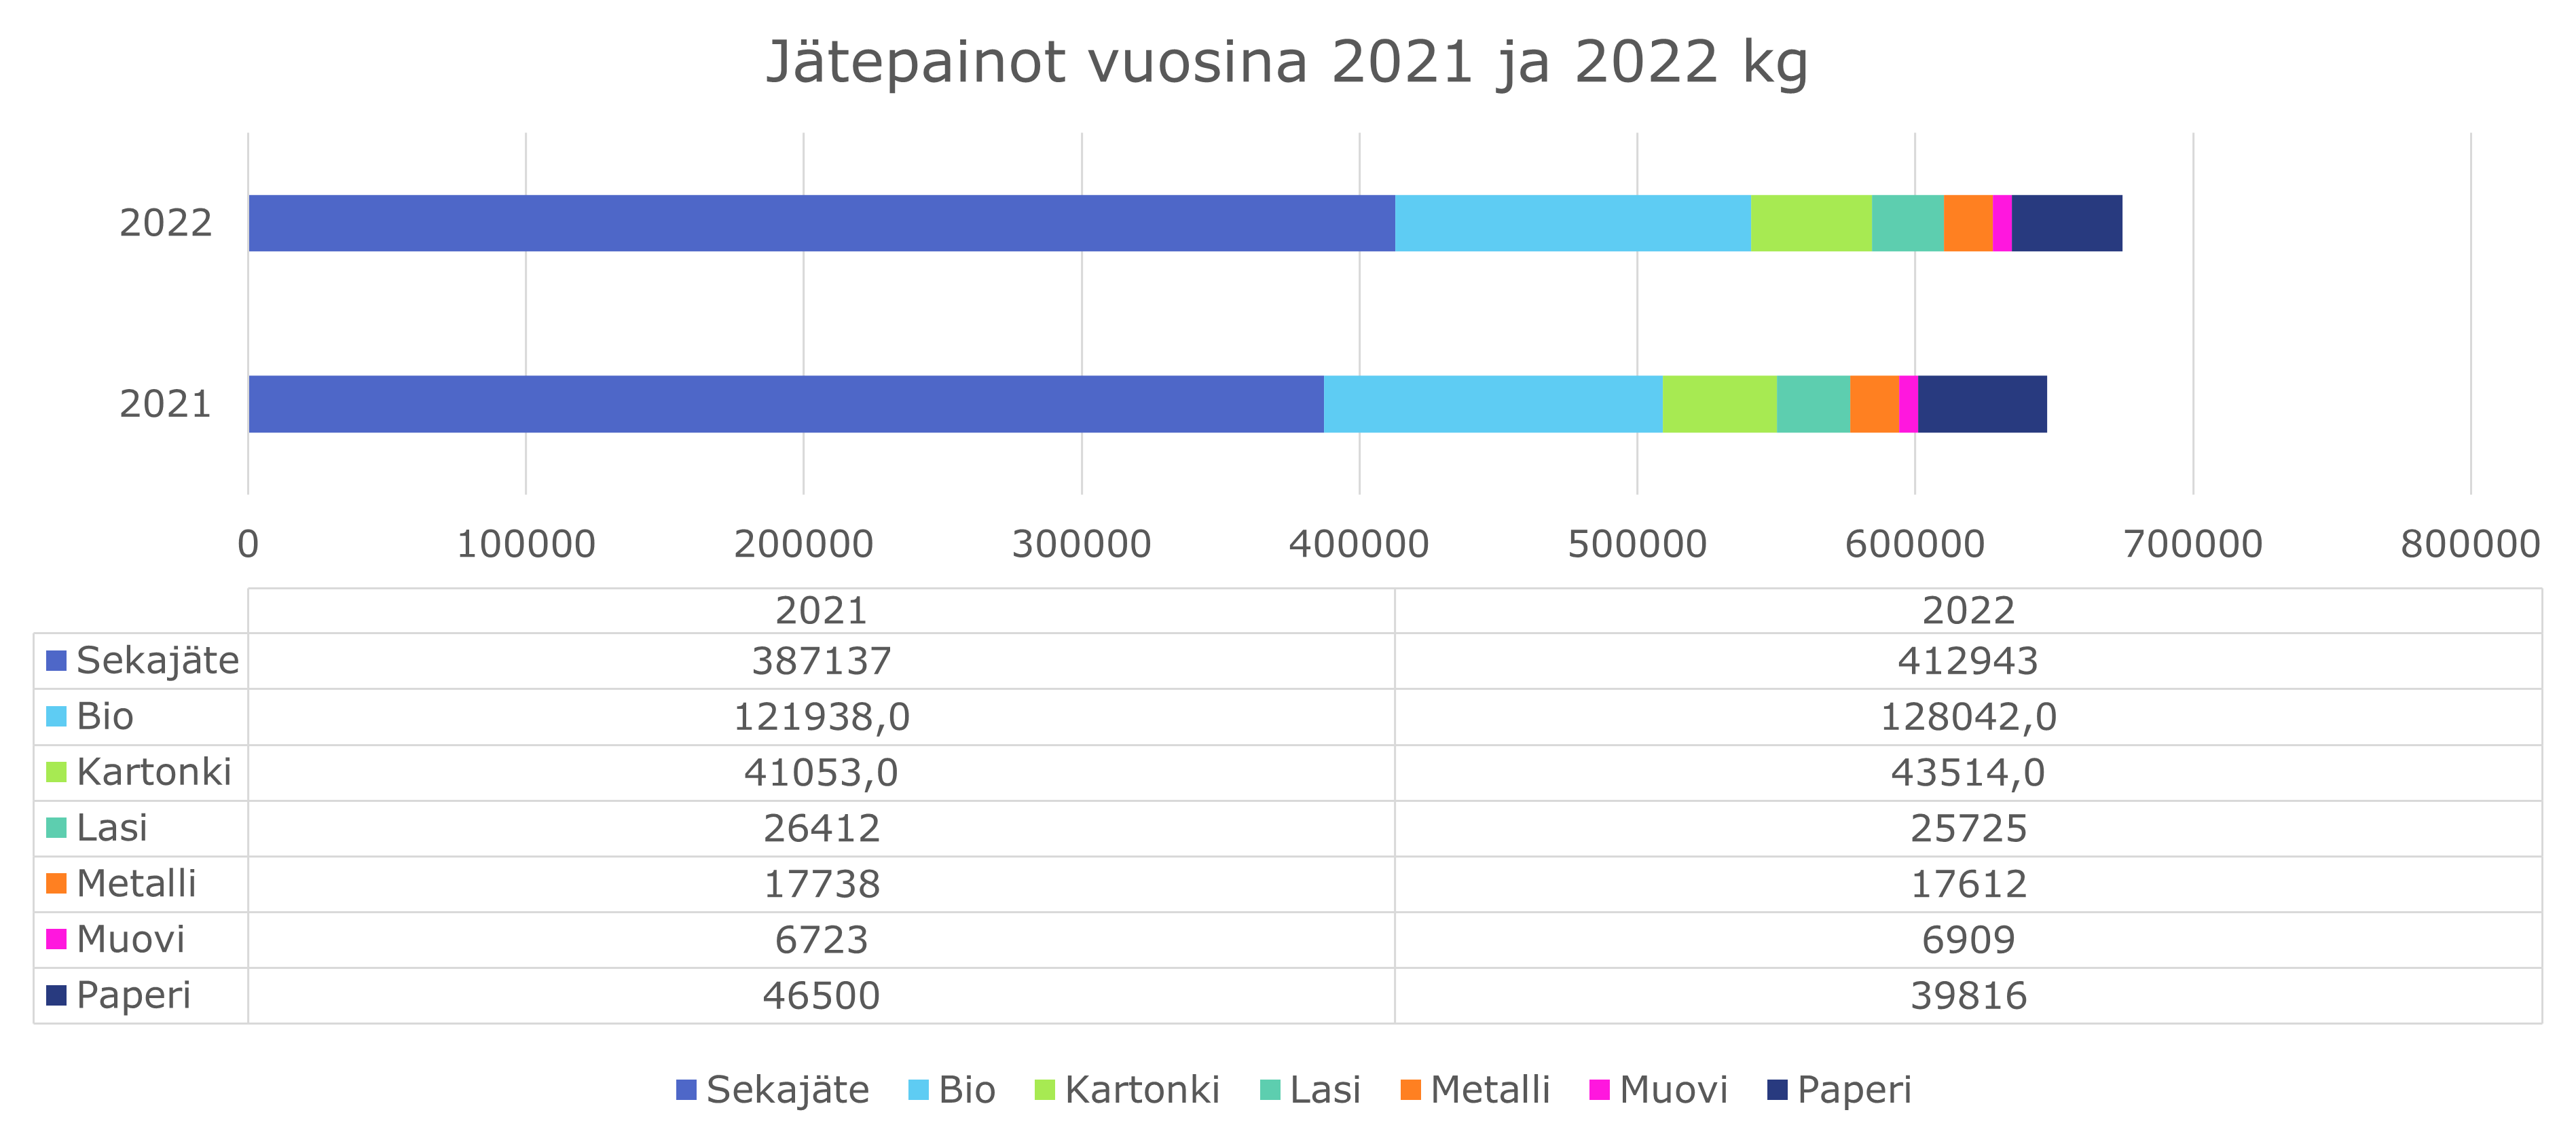 Vertailua vuosien 2021 ja 2022 välillä jätejakeiden painojen perusteella.